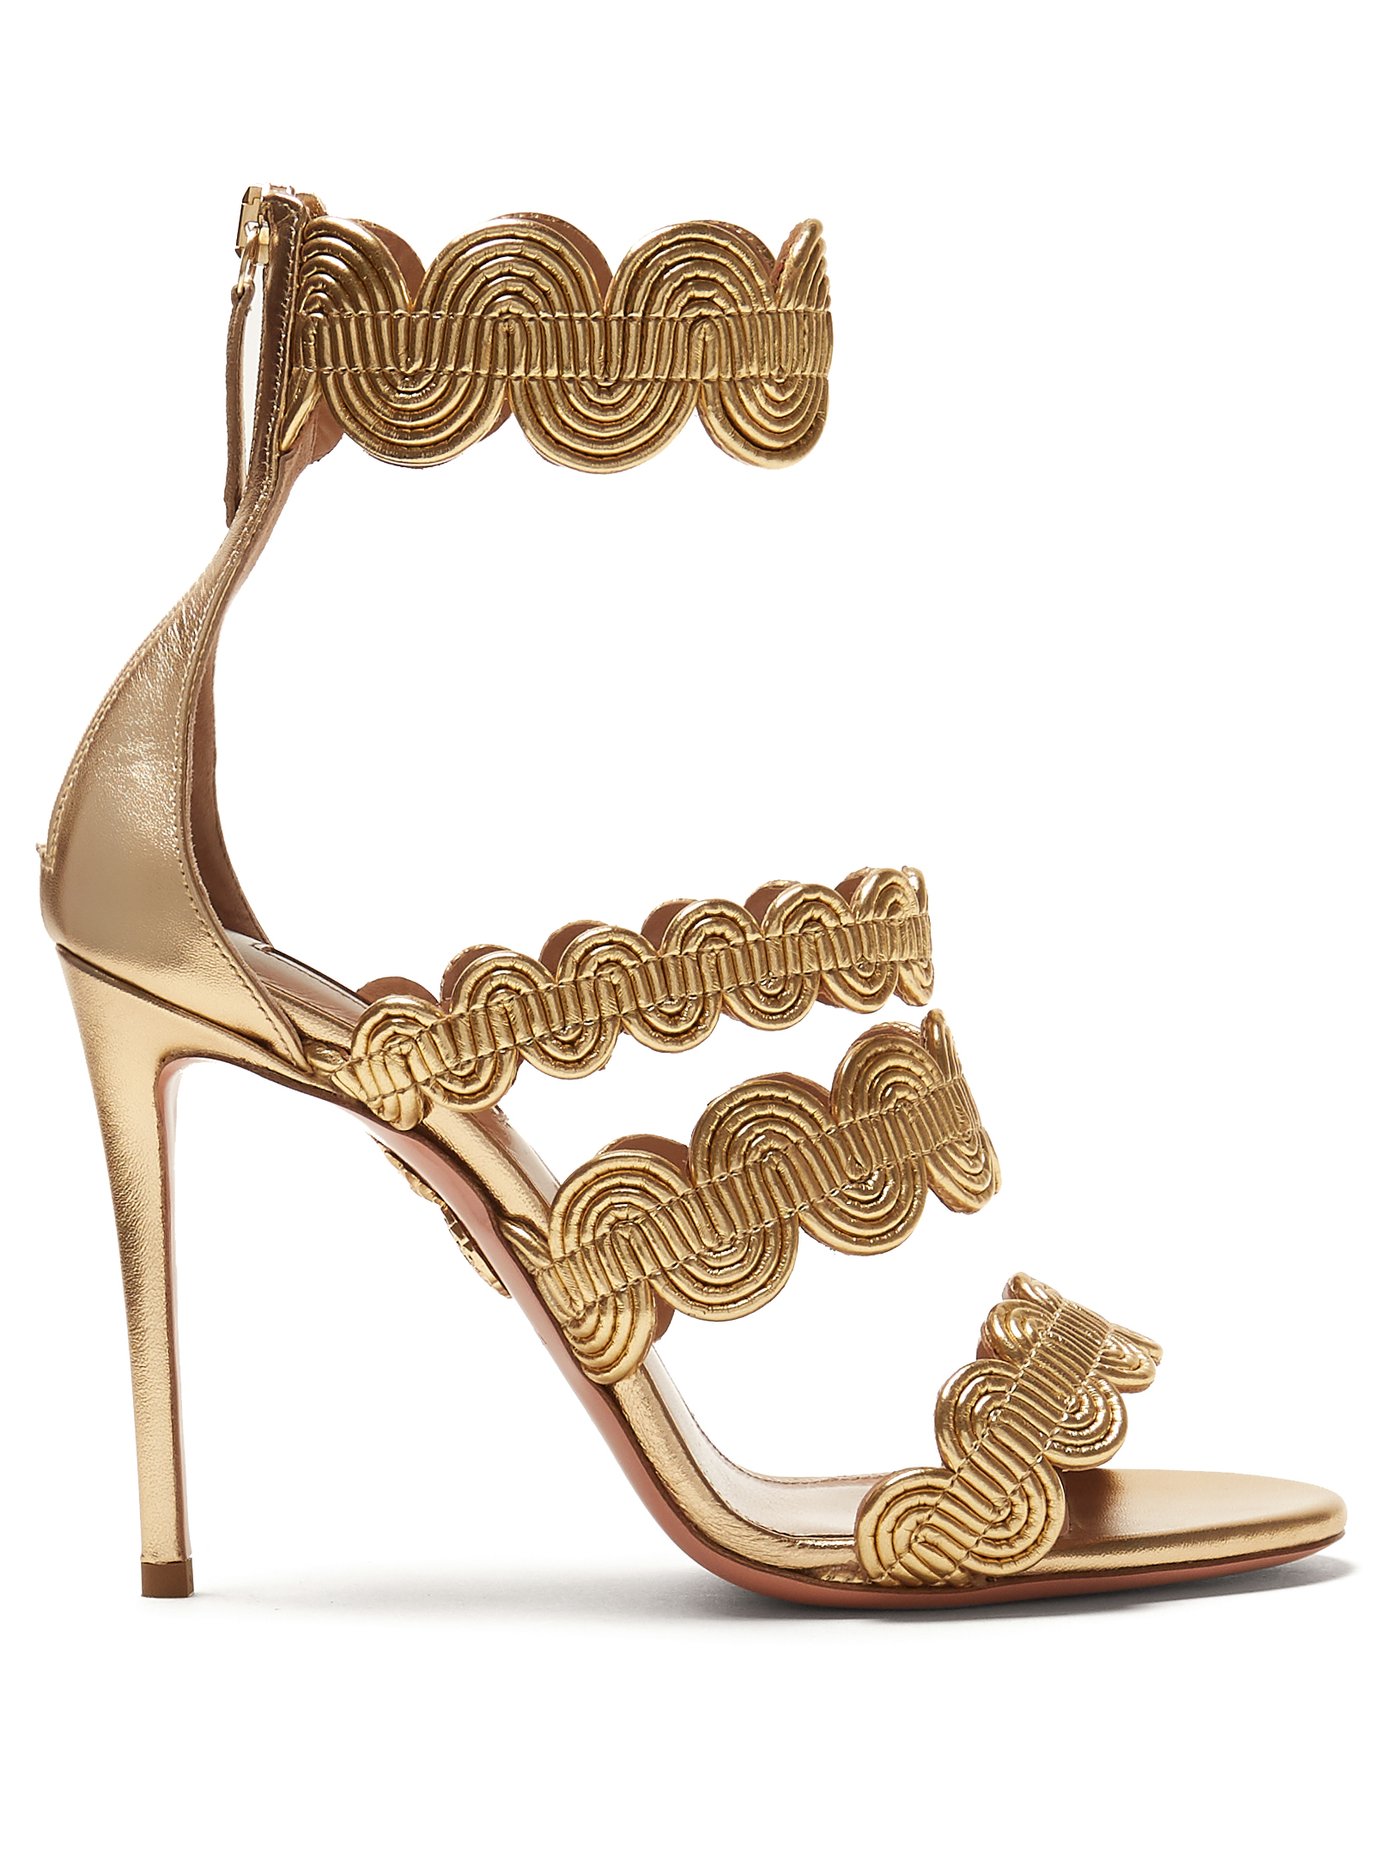 aquazzura gold heels